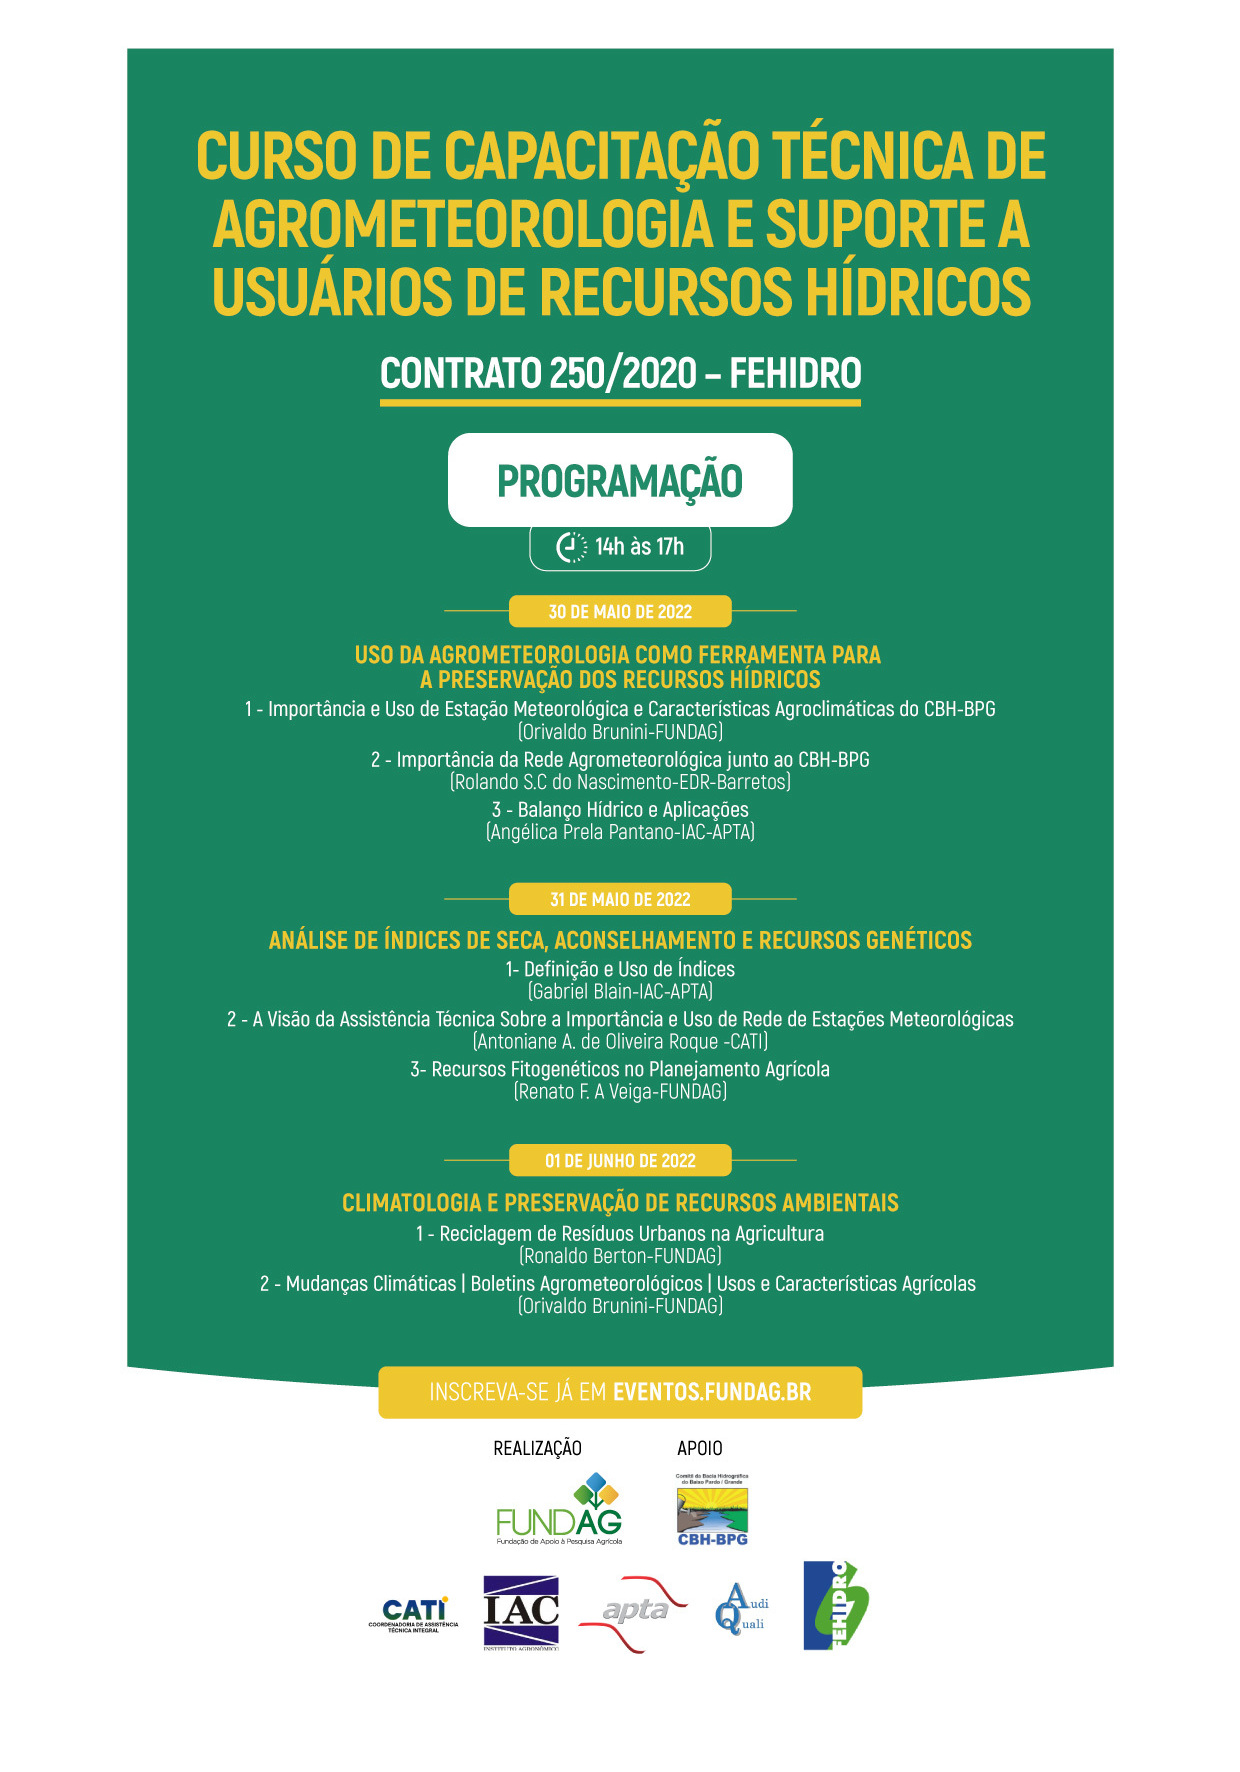 CURSO DE CAPACITAÇÃO TÉCNICA DE AGROMETEOROLOGIA E SUPORTE A USUÁRIOS DE RECURSOS HÍDRICOS